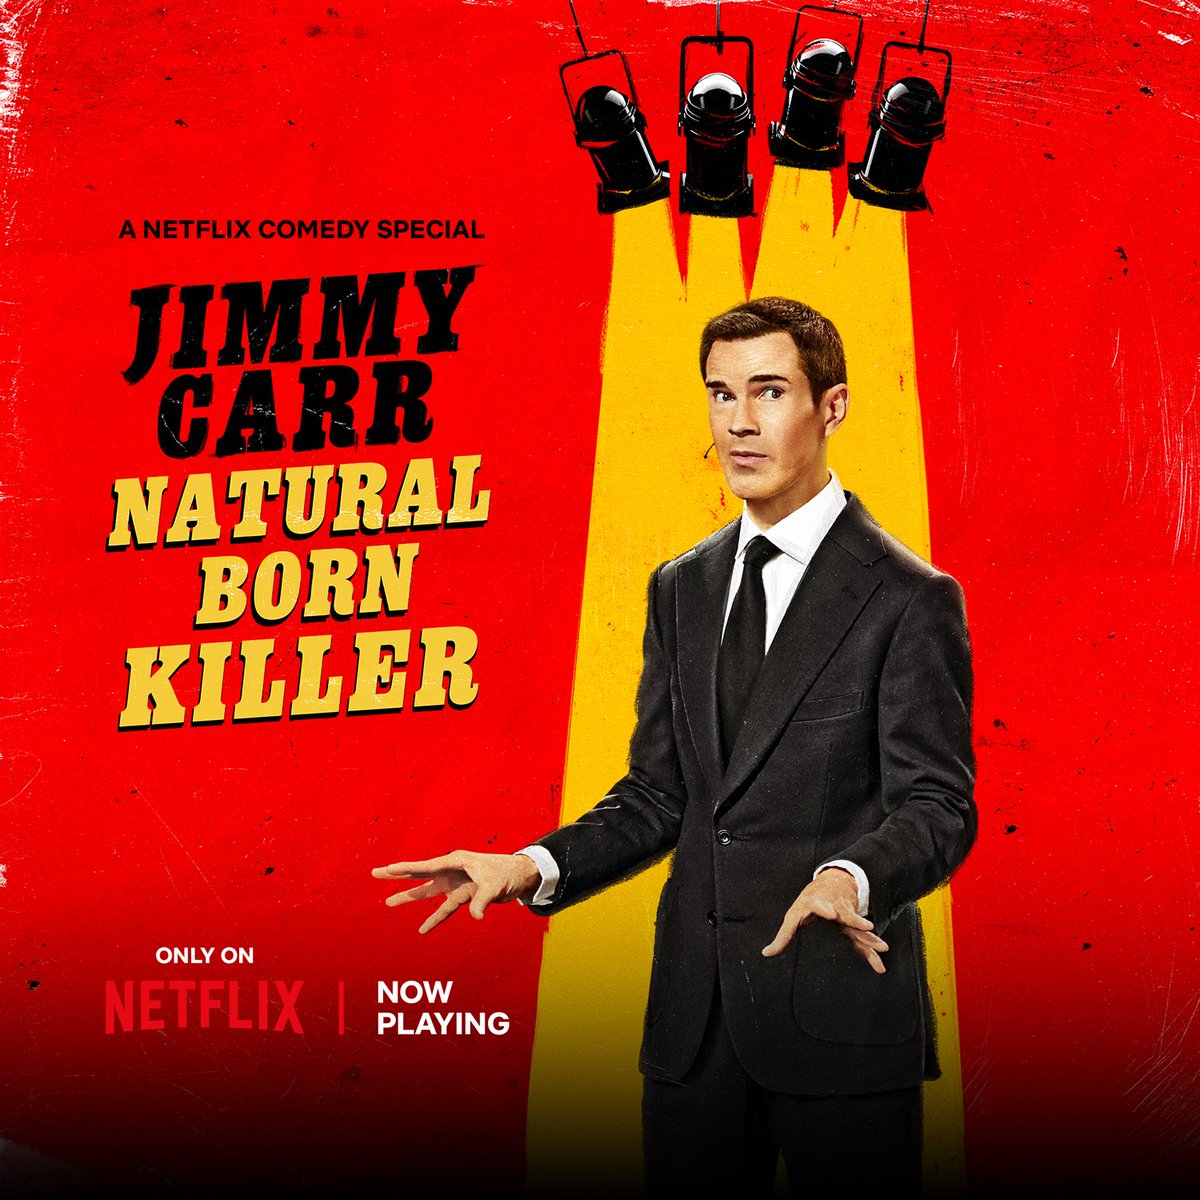 Natural Born Killer, streaming now on @NetflixIsAJoke